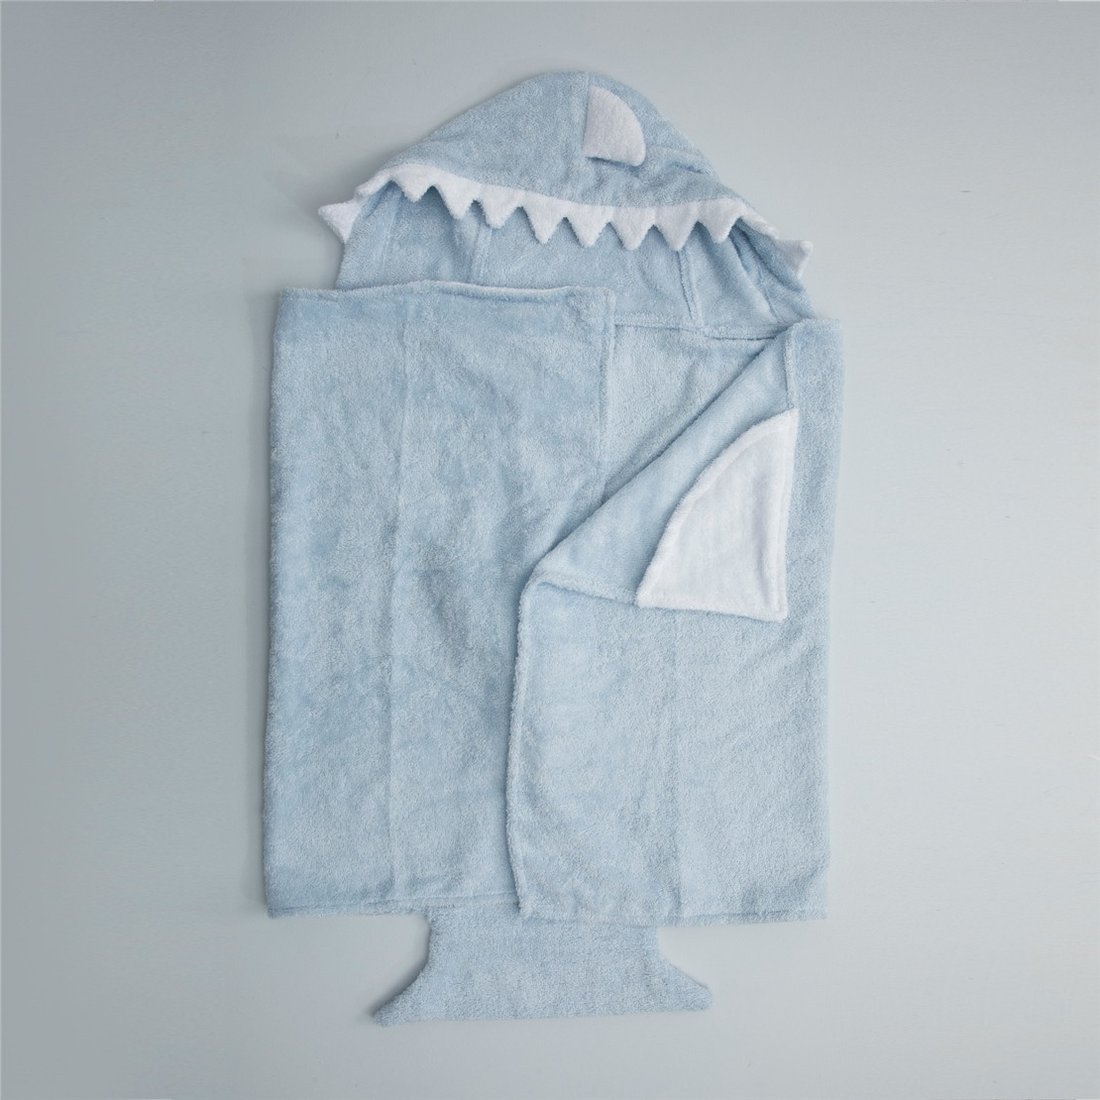 Полотенце с капюшоном после купания SHARK 50*110 голубое